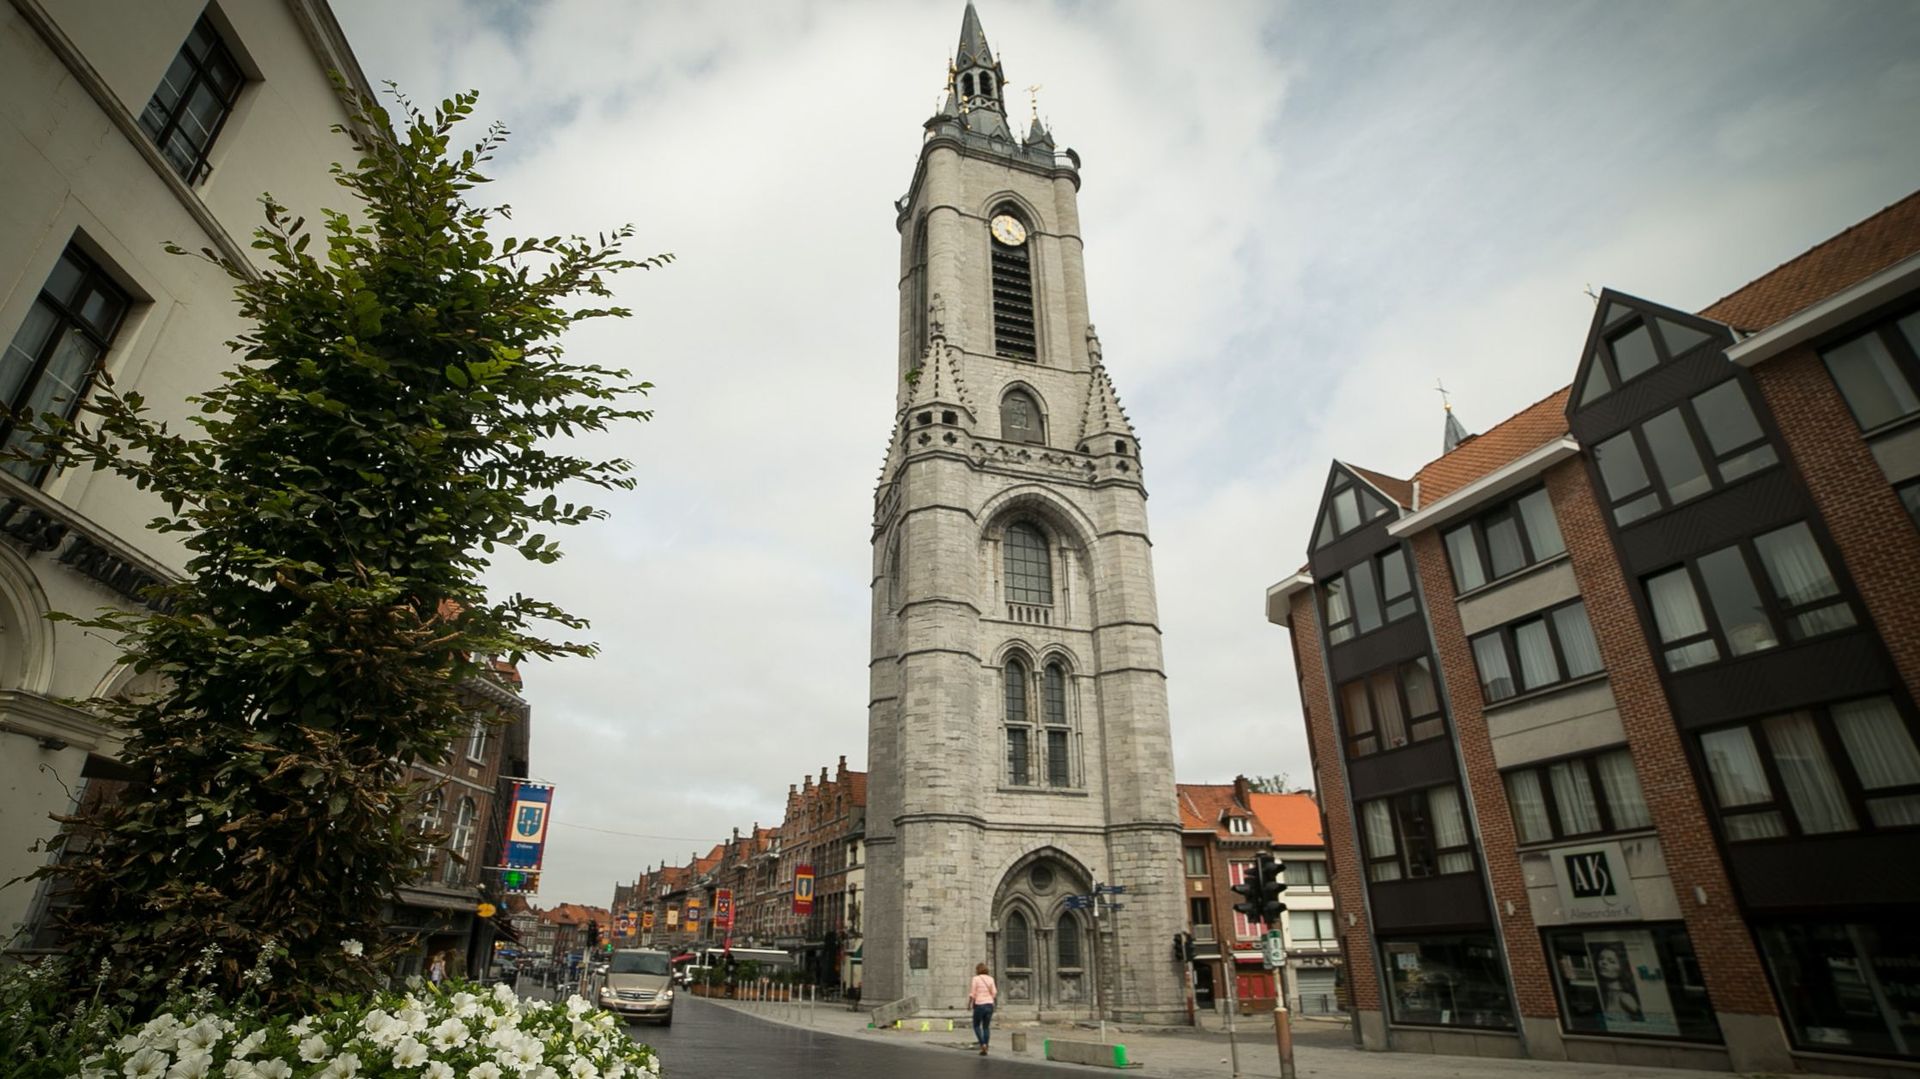 Haut de 72 mètres et surplombant la Grand-Place, le plus ancien beffroi de Belgique a occupé plusieurs rôles importants dont celui de tour de guet, de prison ou encore d’hôtel de ville. Il est situé à quelques mètres de la Cathédrale Notre-Dame de Tournai